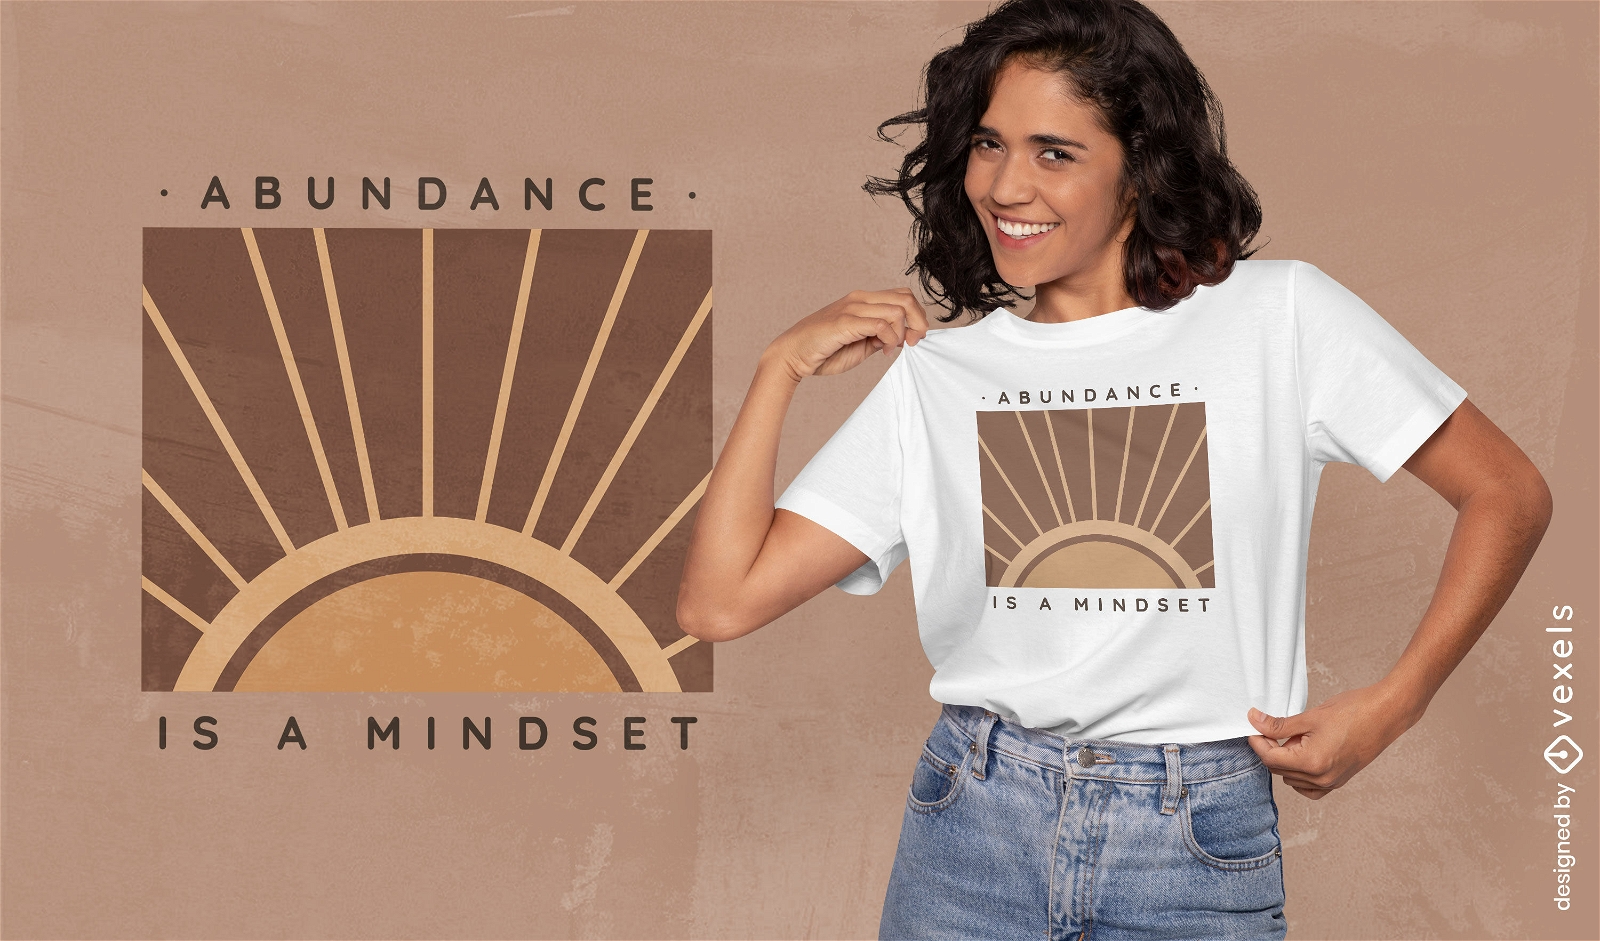 Diseño de camiseta con mentalidad de abundancia.